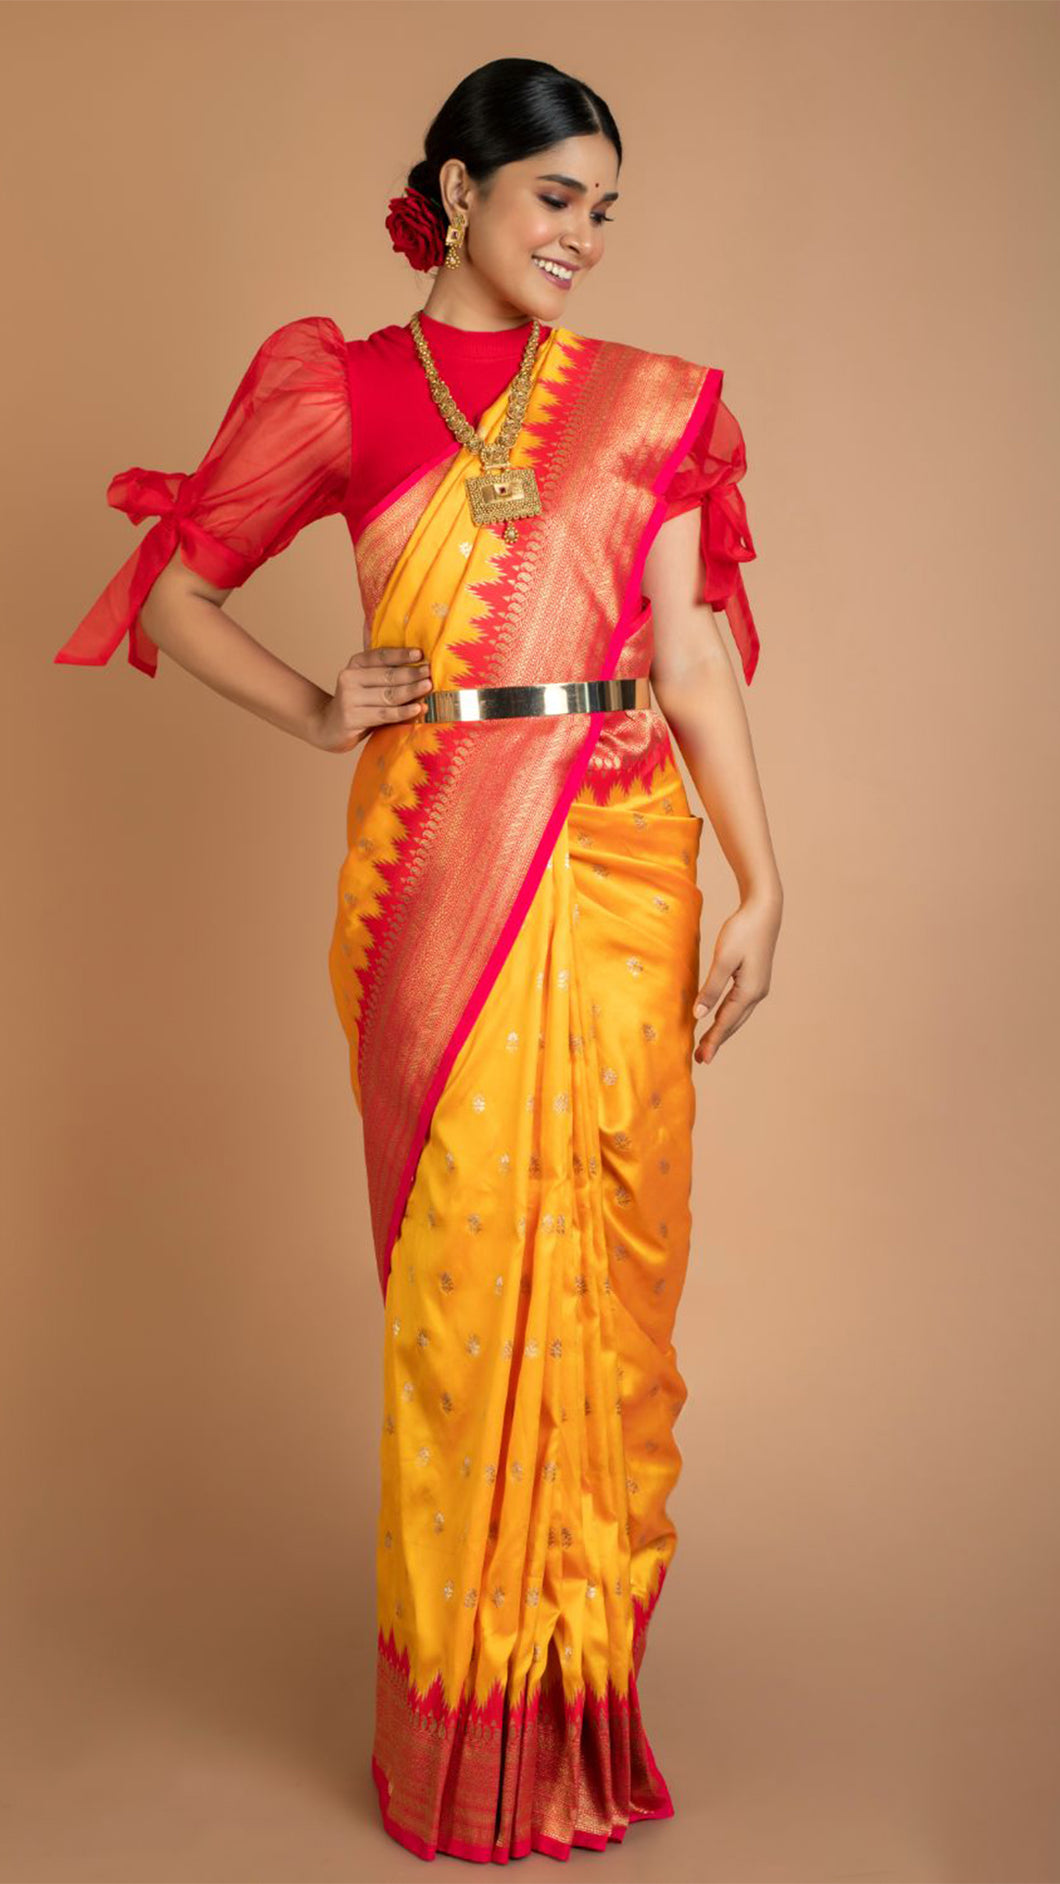 Ananya Panday Stuns in Hot Yellow Blouse And Matching Saree, Pics